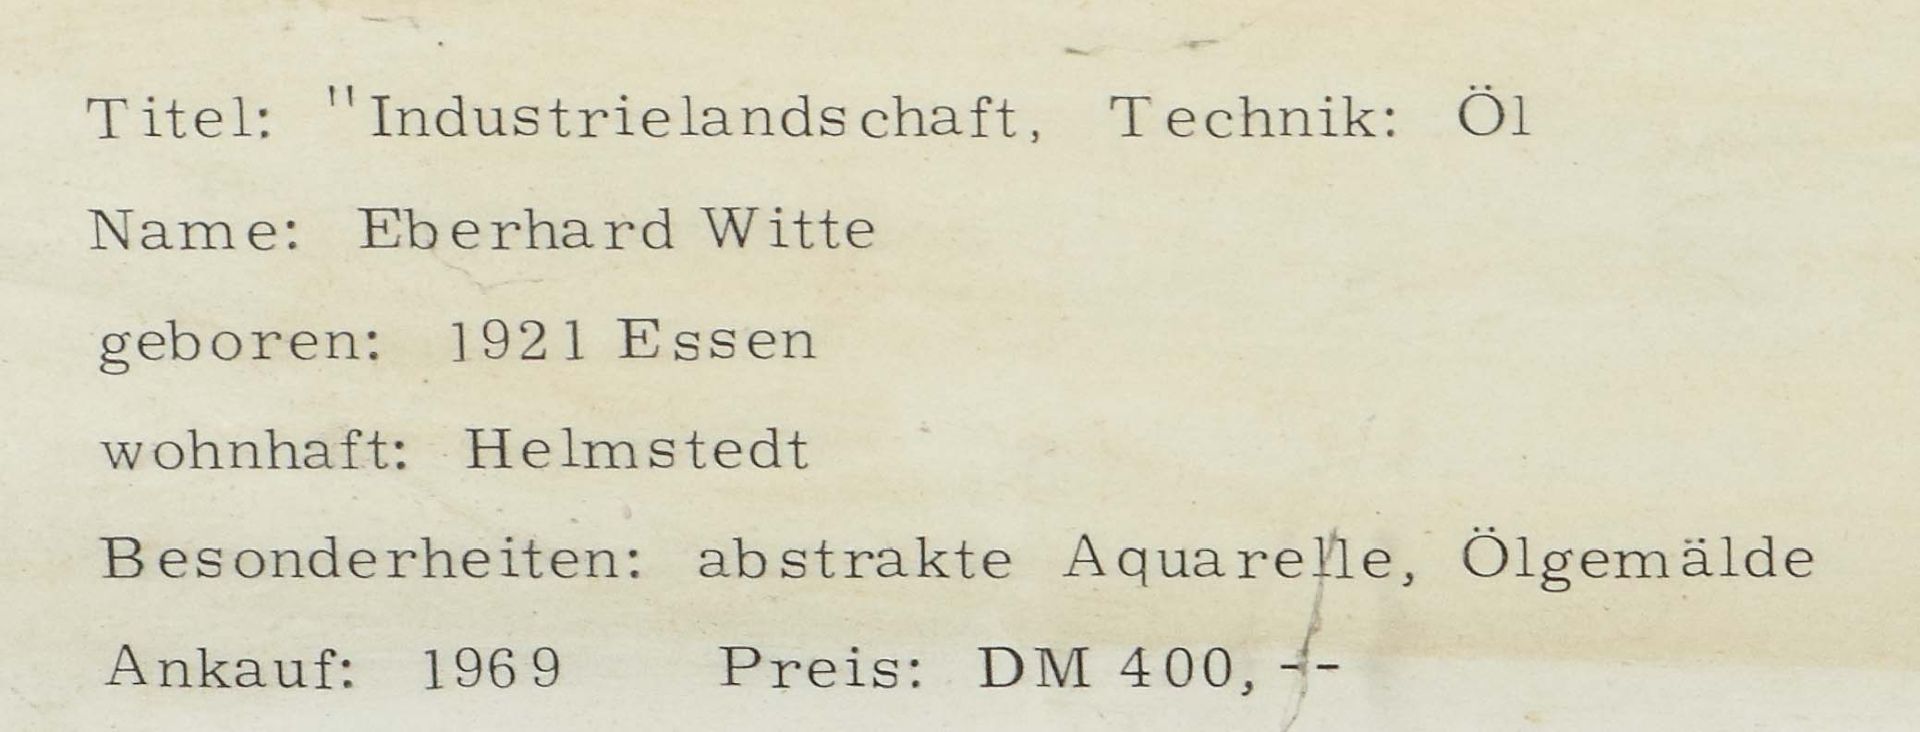 Witte, Eberhard Essen 1921 - ?, - Image 4 of 5